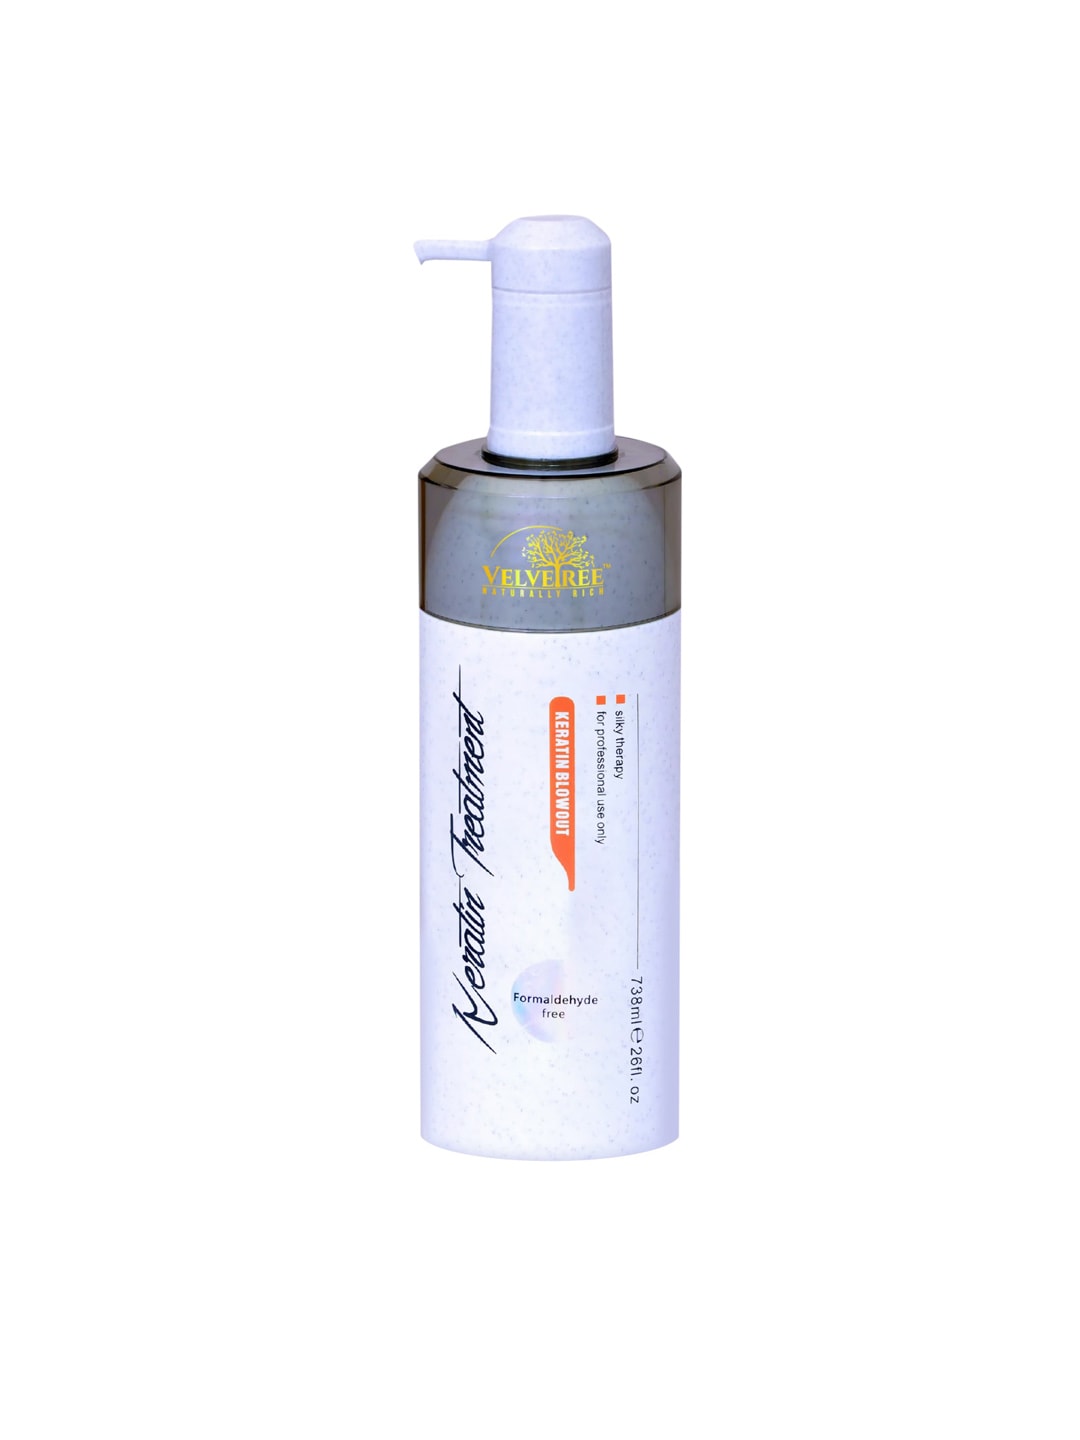 Velvetree White Keratin Treatment Blowout Shampoo Price in India